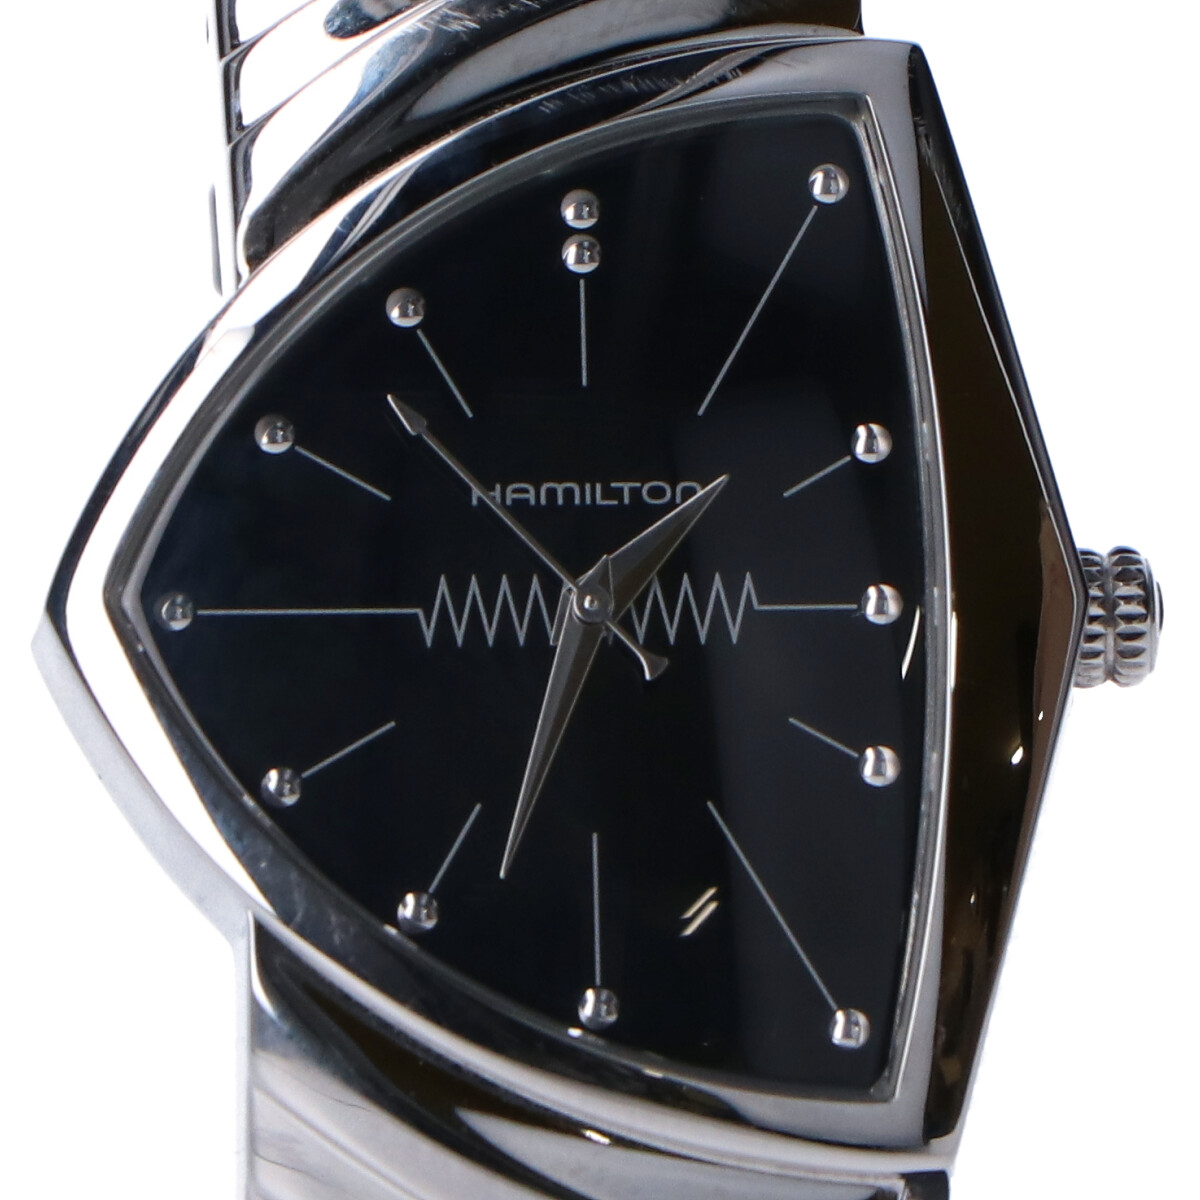 ハミルトンのH24411232 ベンチュラ クオーツ 腕時計の買取実績です。